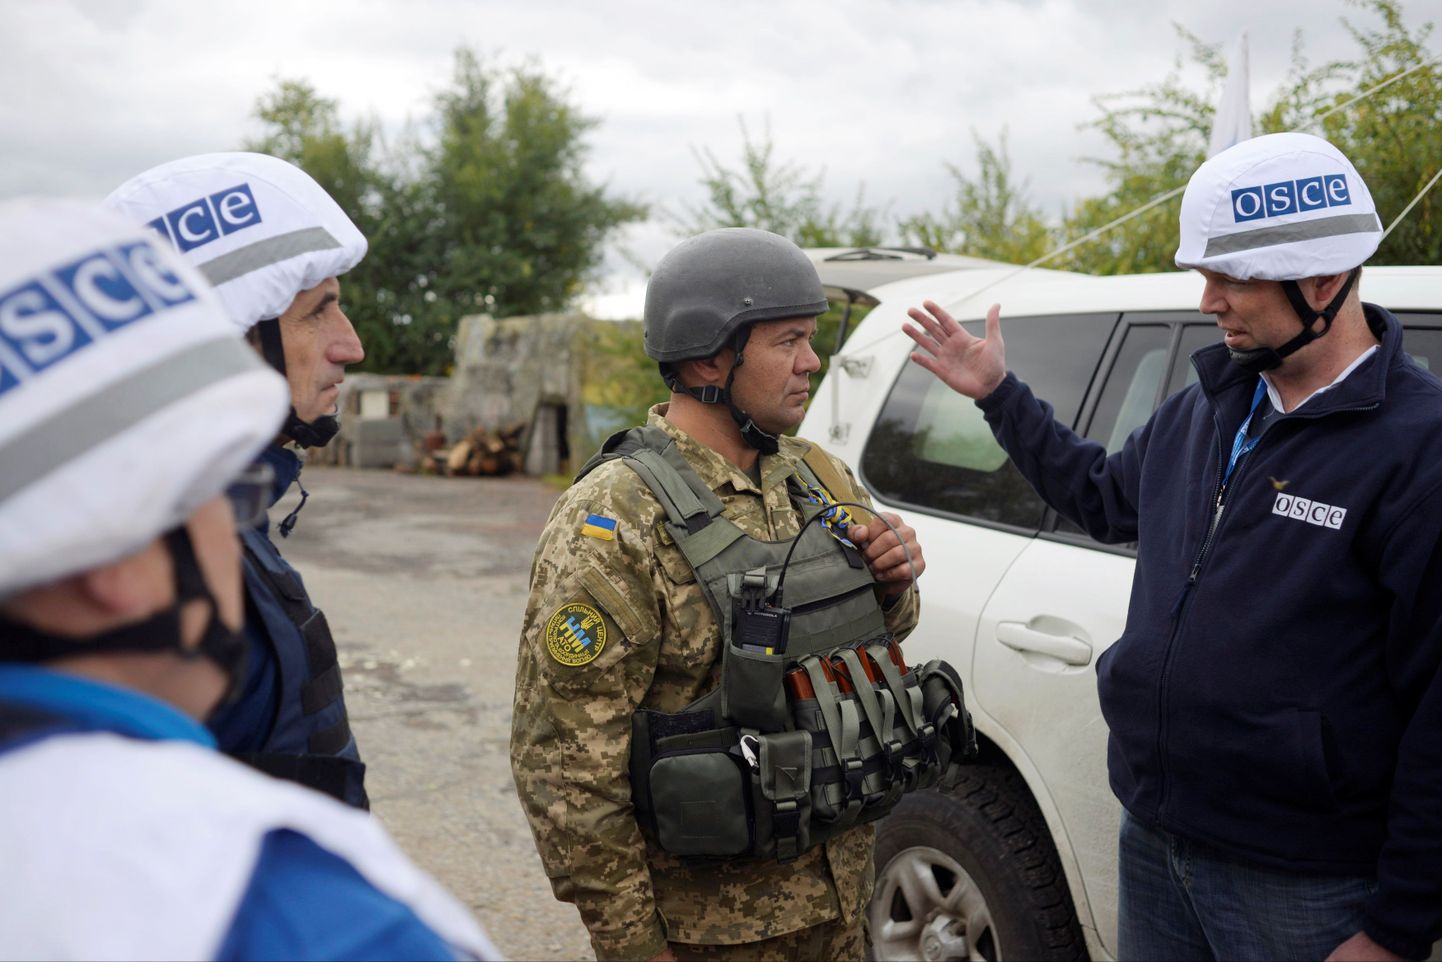 OSCE vaatlejad Ukraina sõduriga rääkimas.